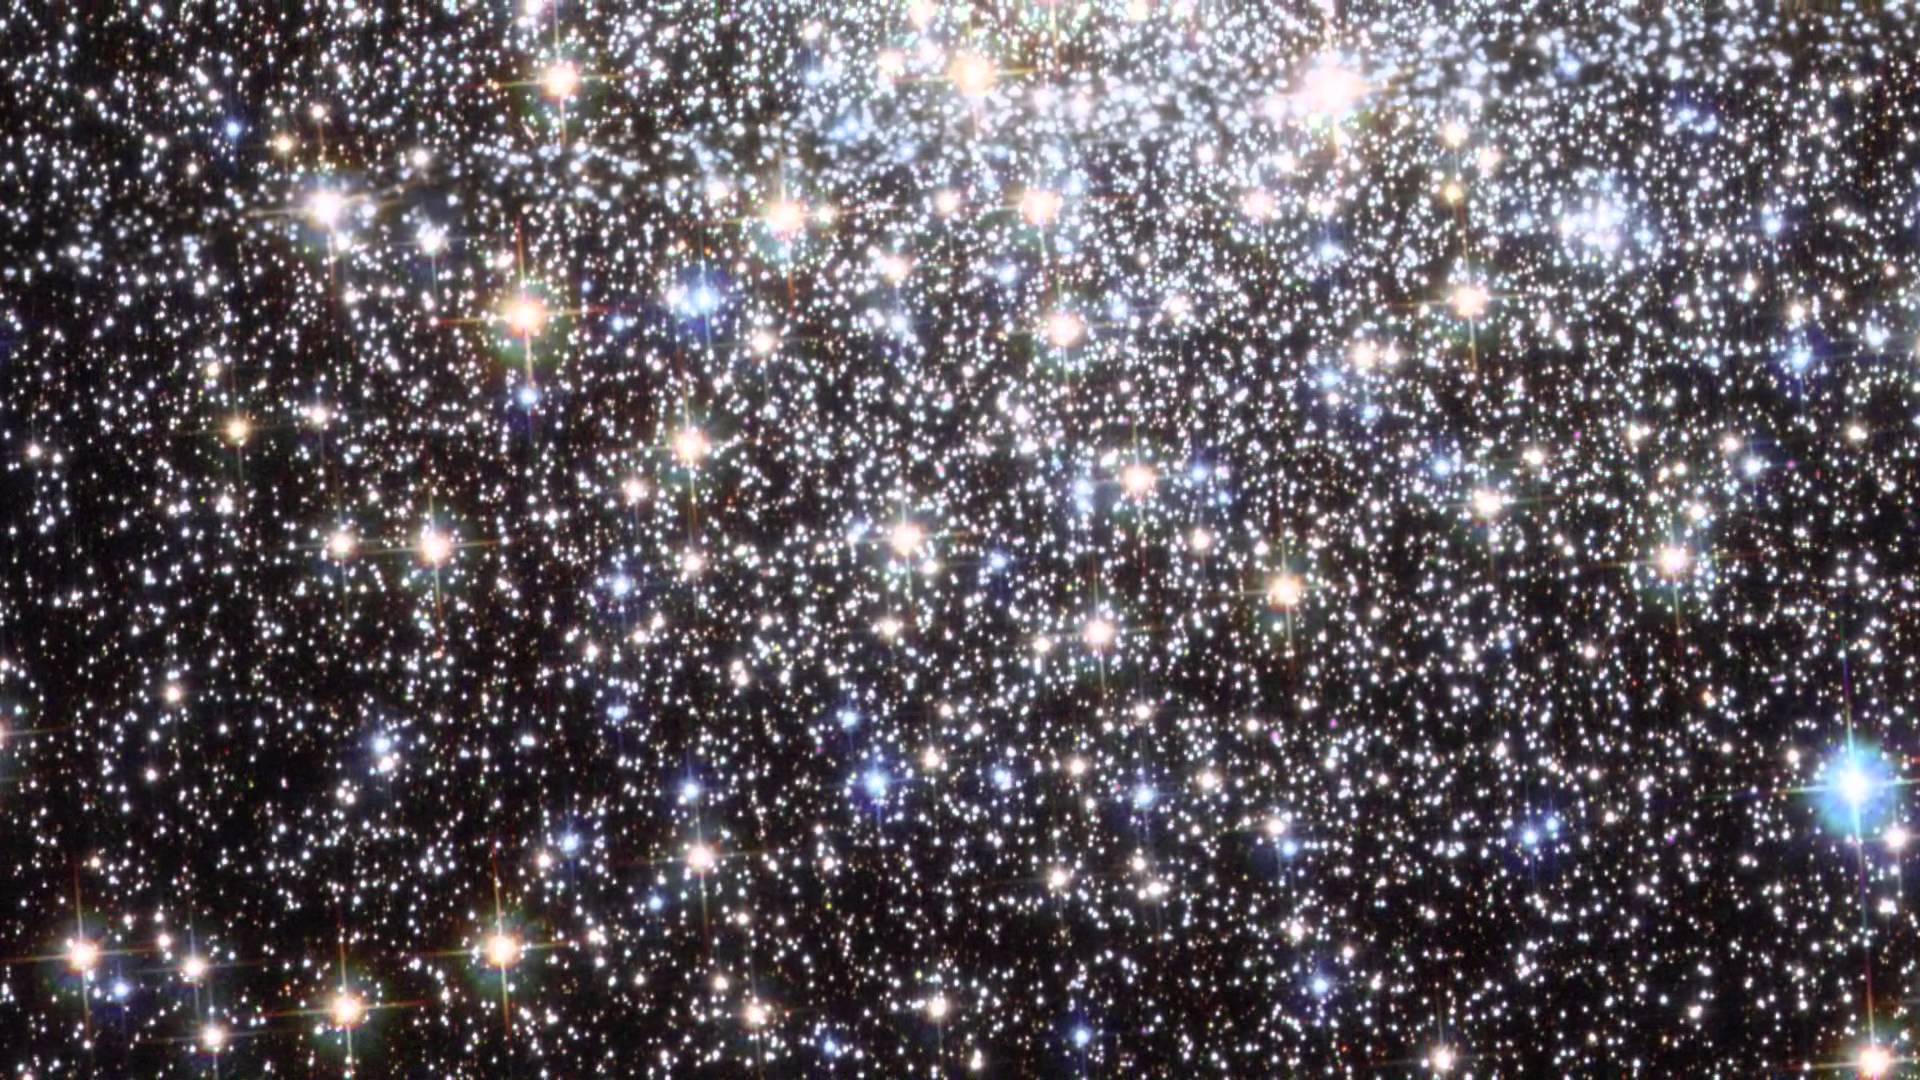 Hubble: Globular Star Cluster Messier 9 (2012.03.16) [1080p]